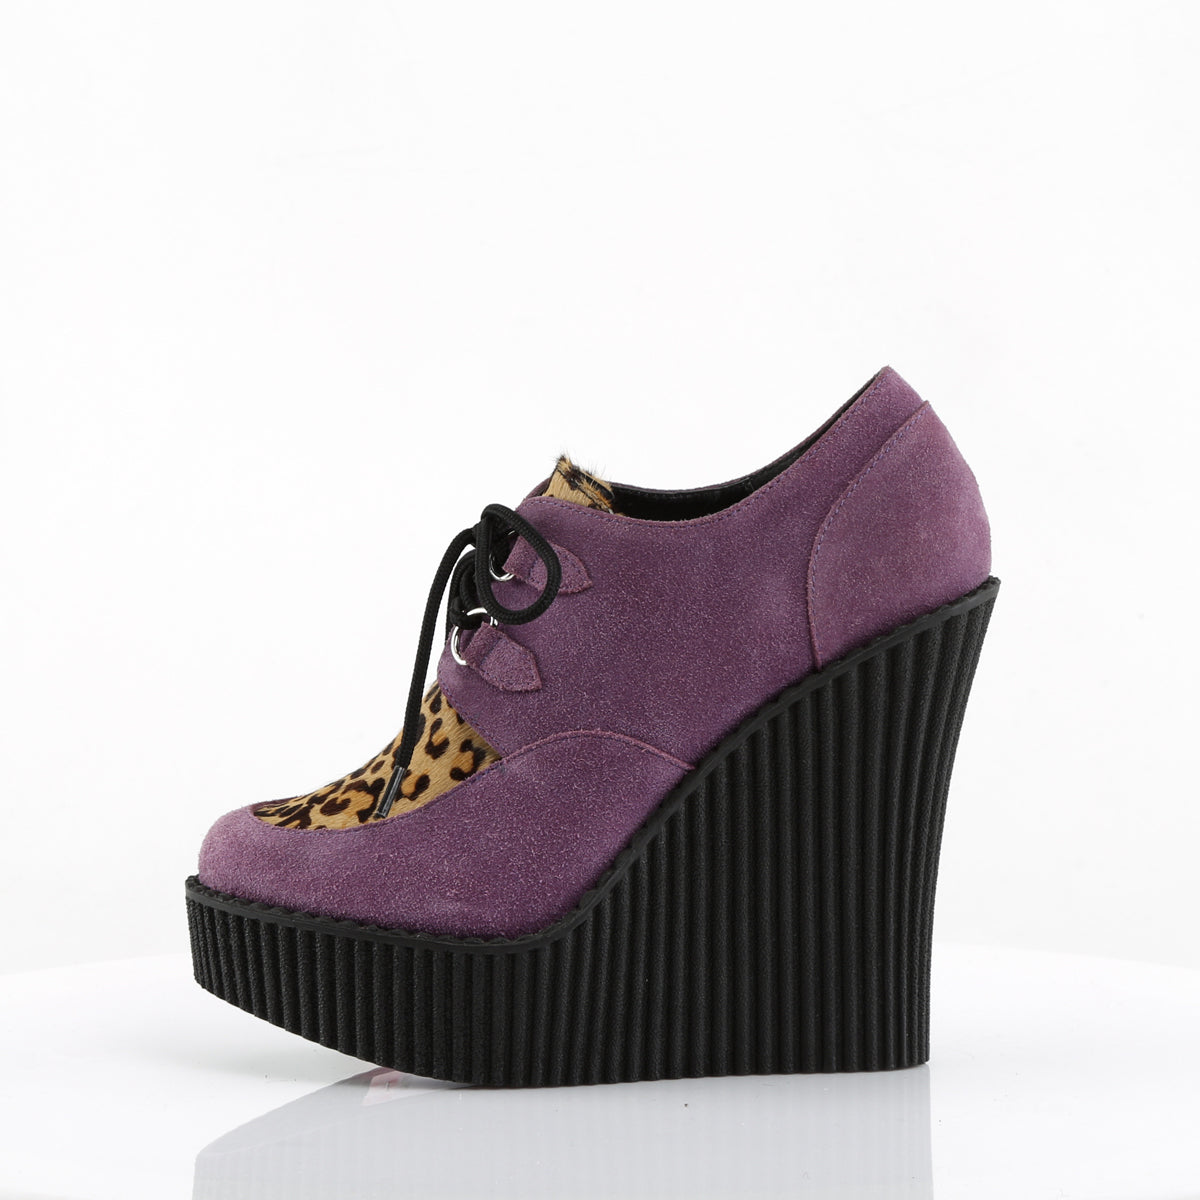 DemoniaCult Womens Low Shoe CREEPER-304 Purple Vegan Suede-Leopard Printed Pony Hair